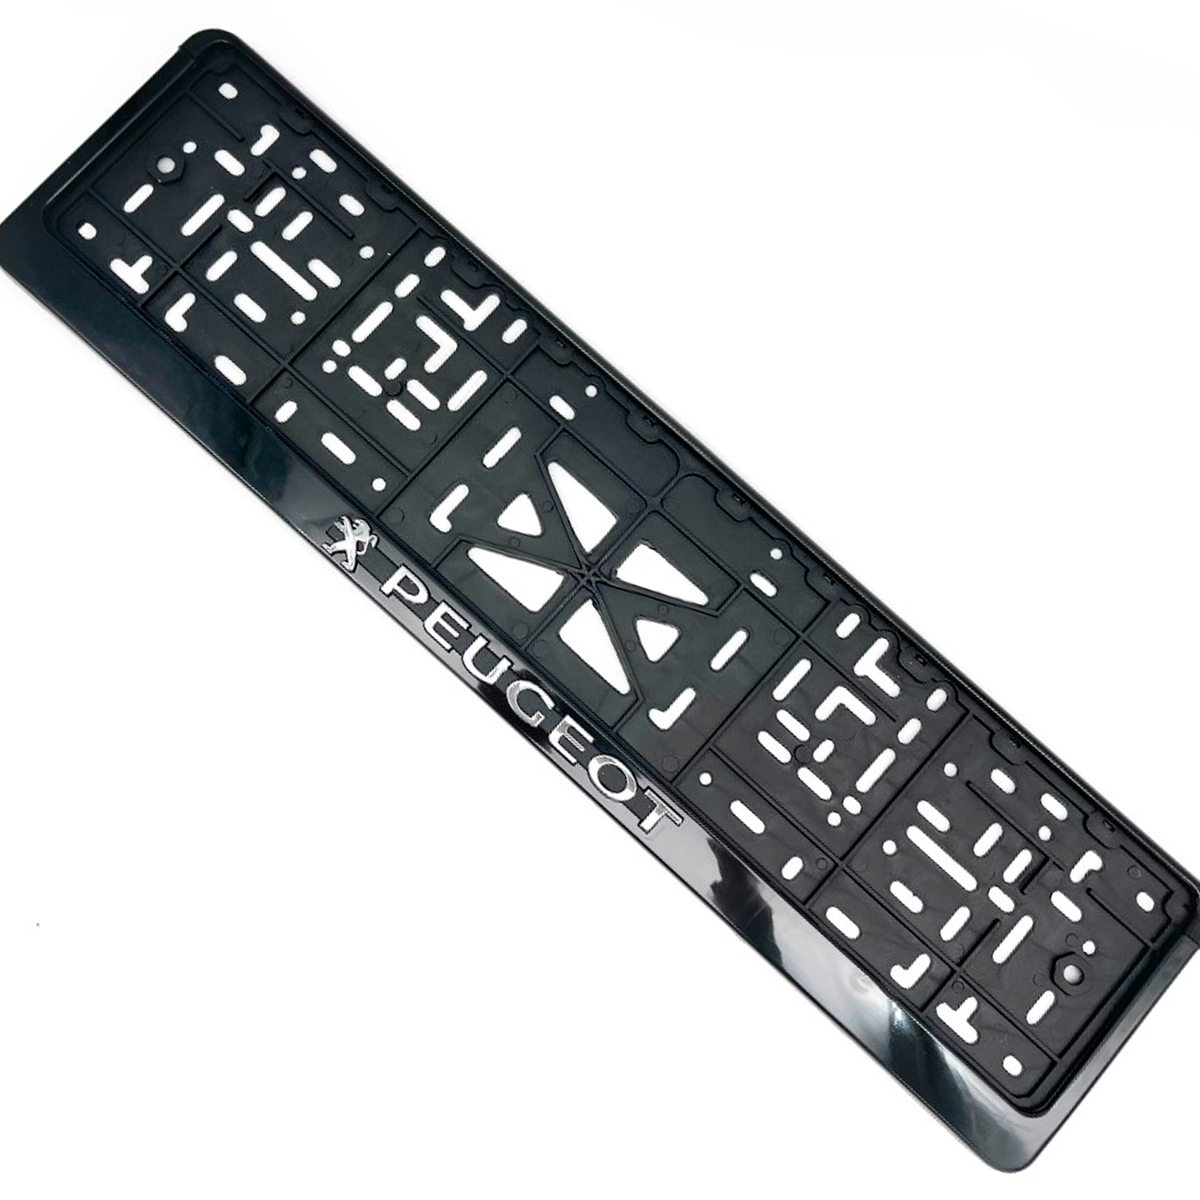 Рамка номерного знака EZID-AUTO стандарт PEUGEOT черная, ABS-пластик, 1шт